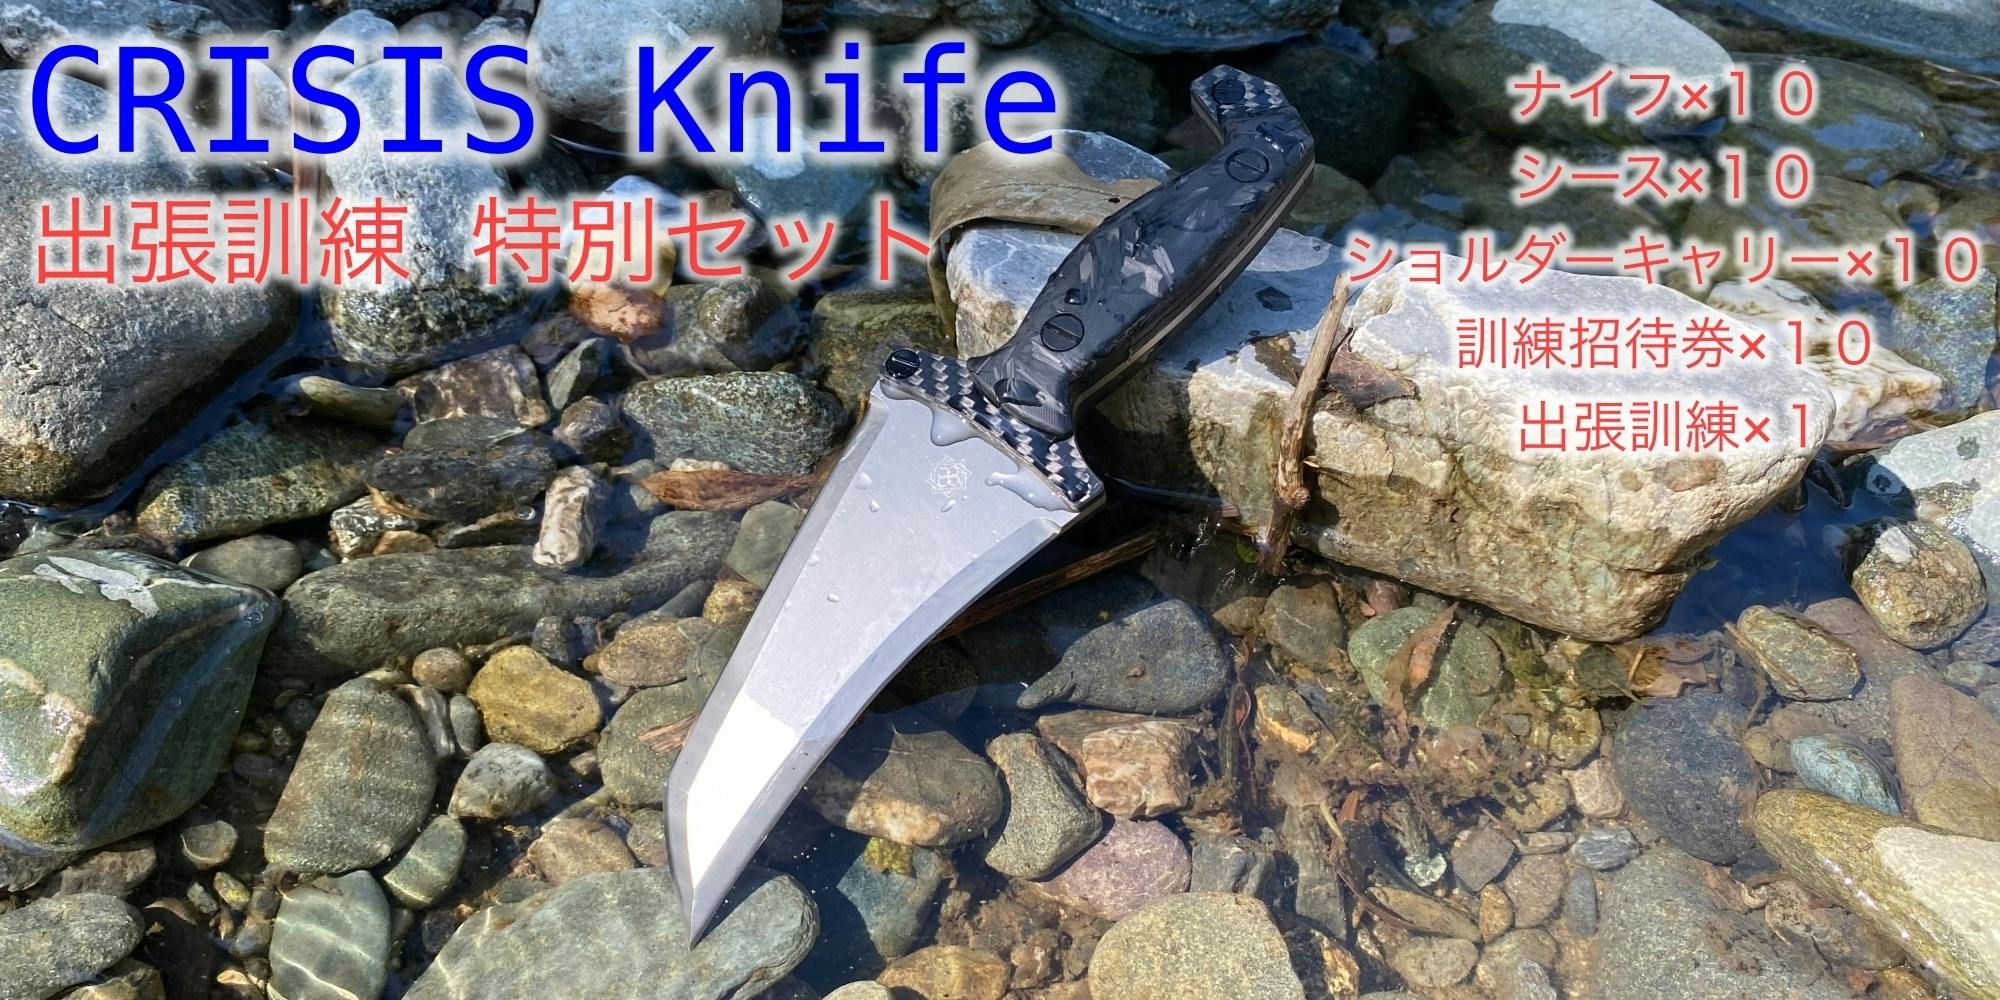 元特殊部隊員が考案した究極のナイフ『CRISIS Knife S35VN 